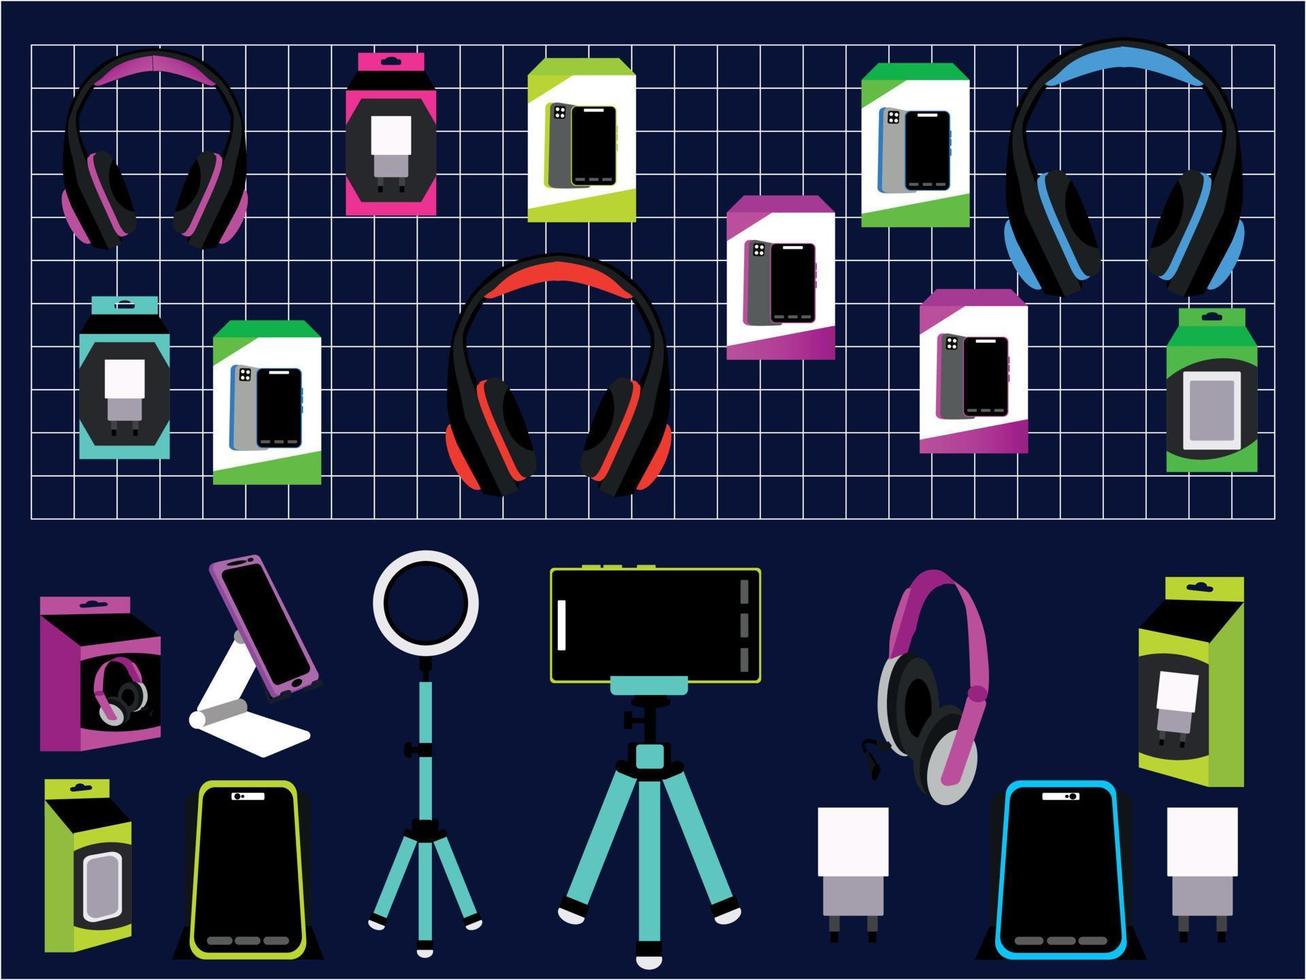 ensemble de téléphones mobiles de collection et d'accessoires, illustration vectorielle vecteur